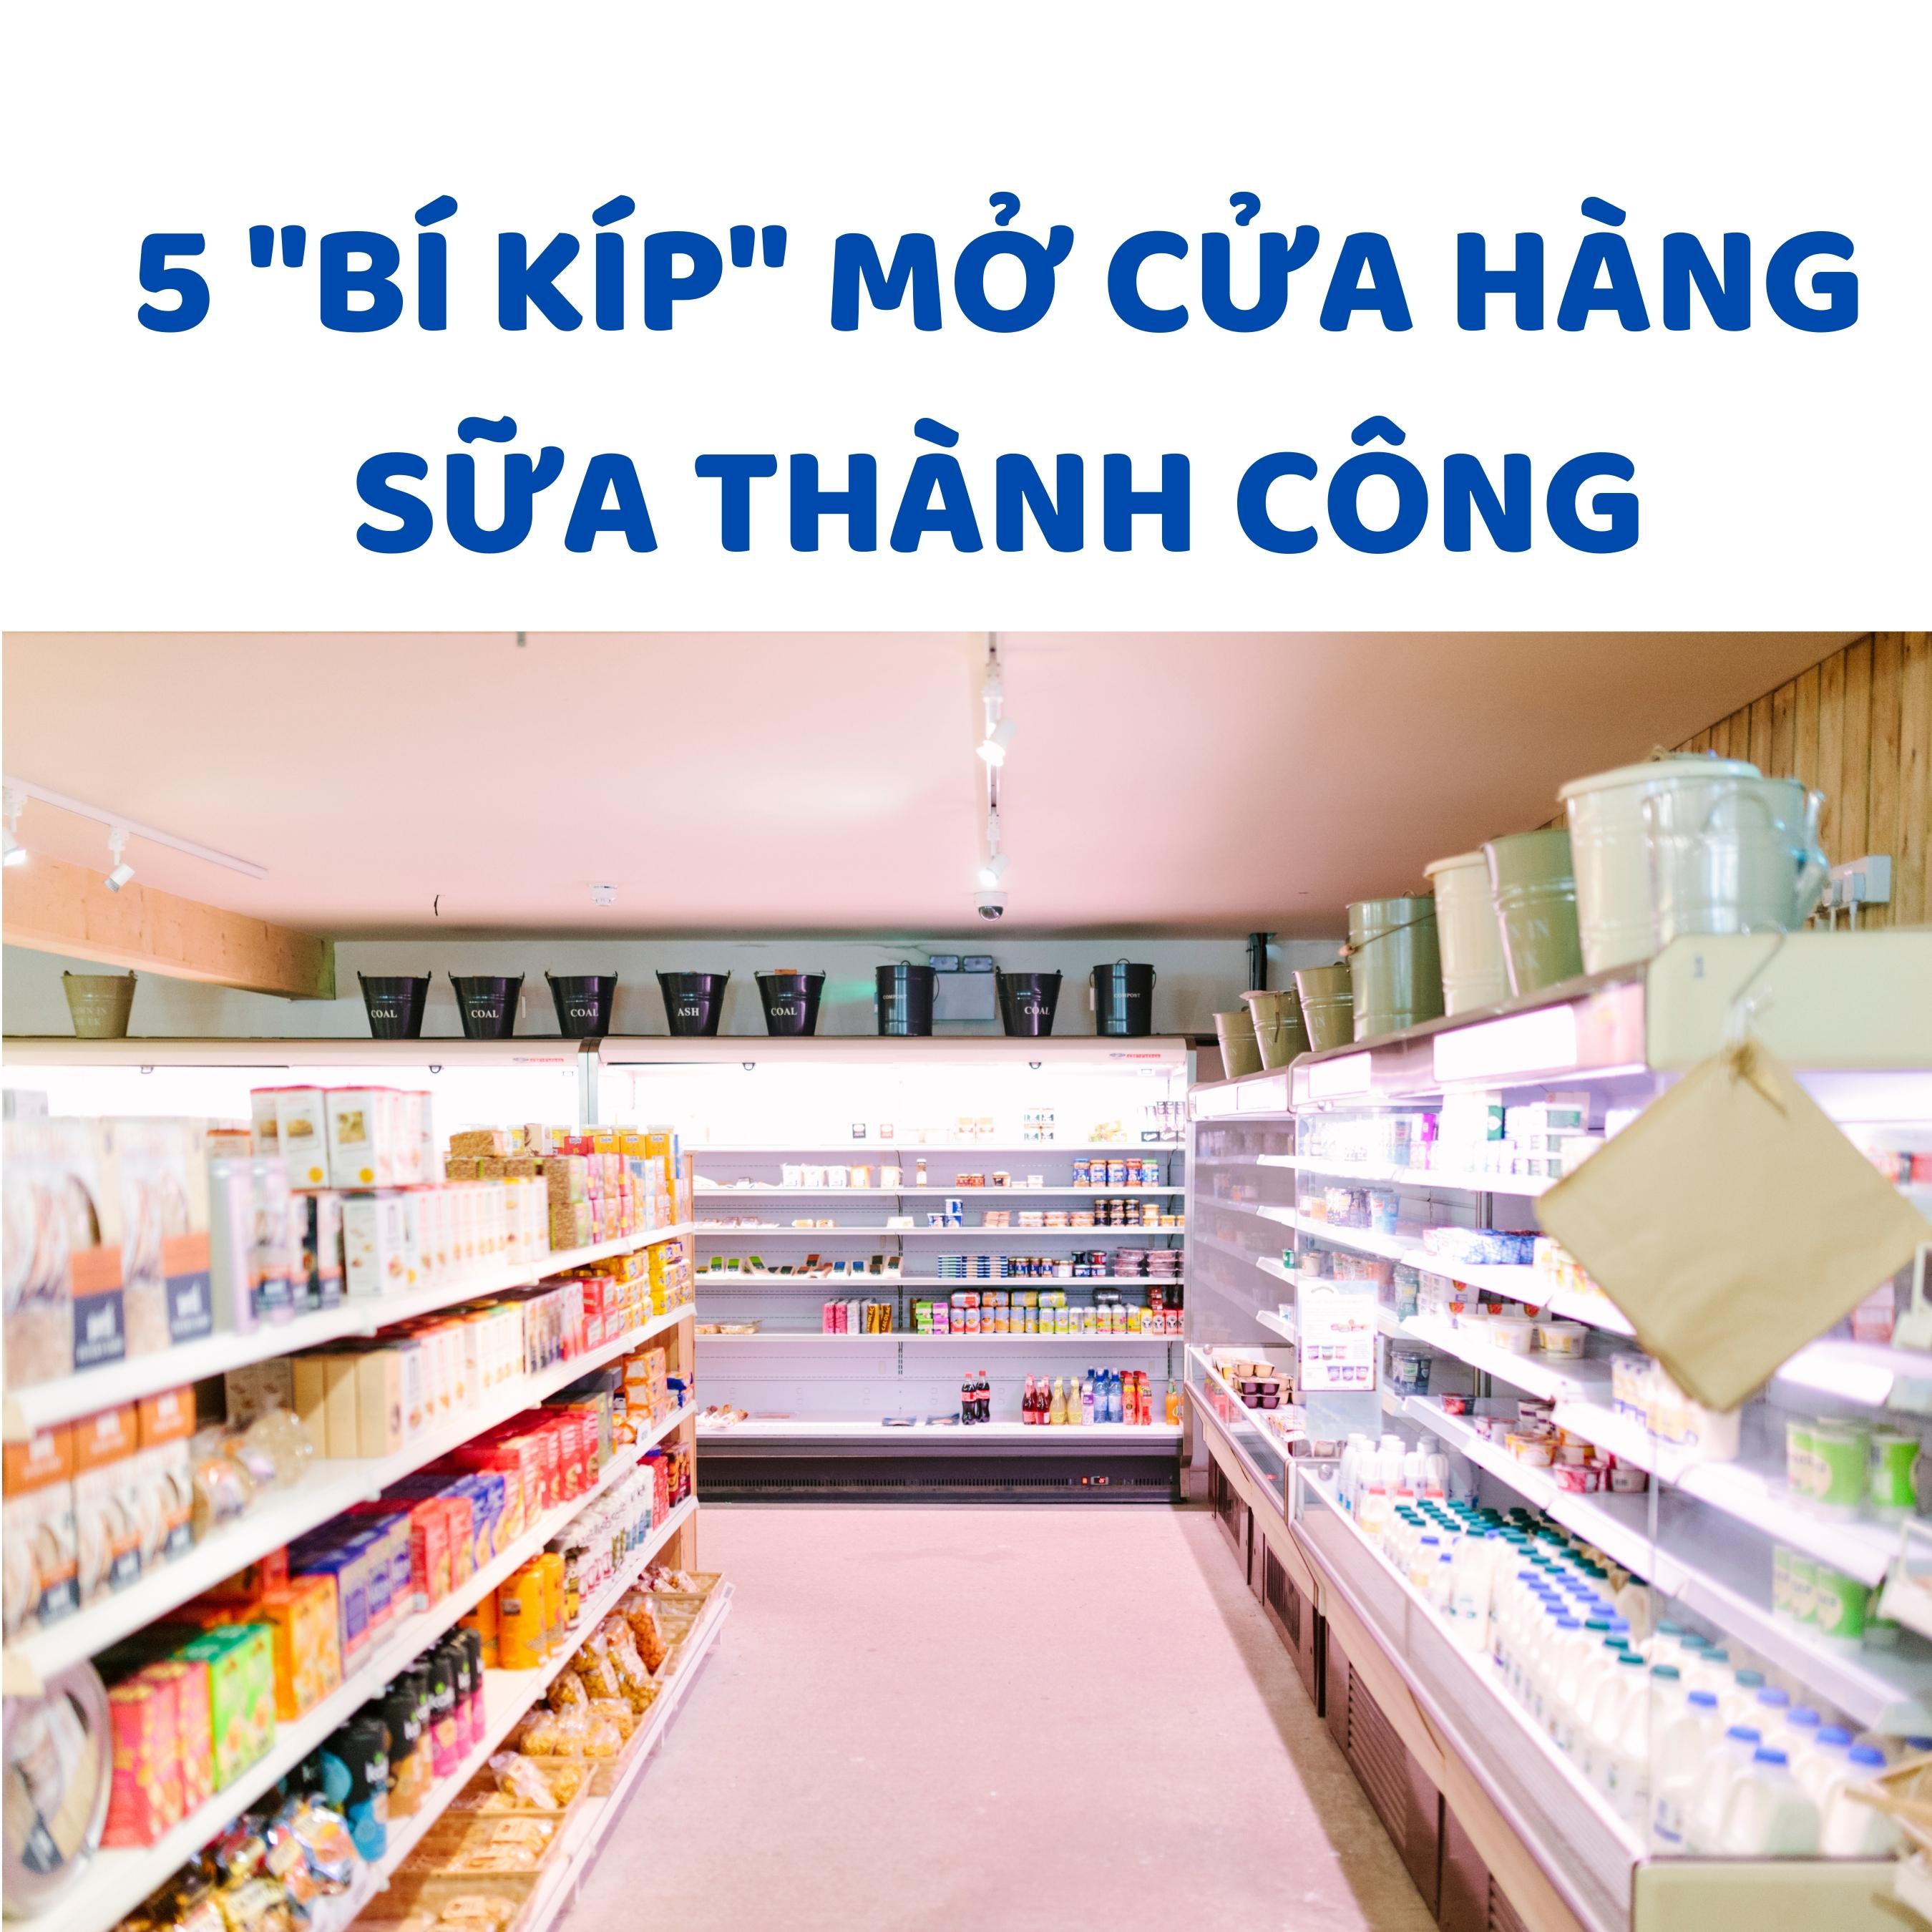 5 bí kíp mở cửa hàng sữa lợi nhuận cao